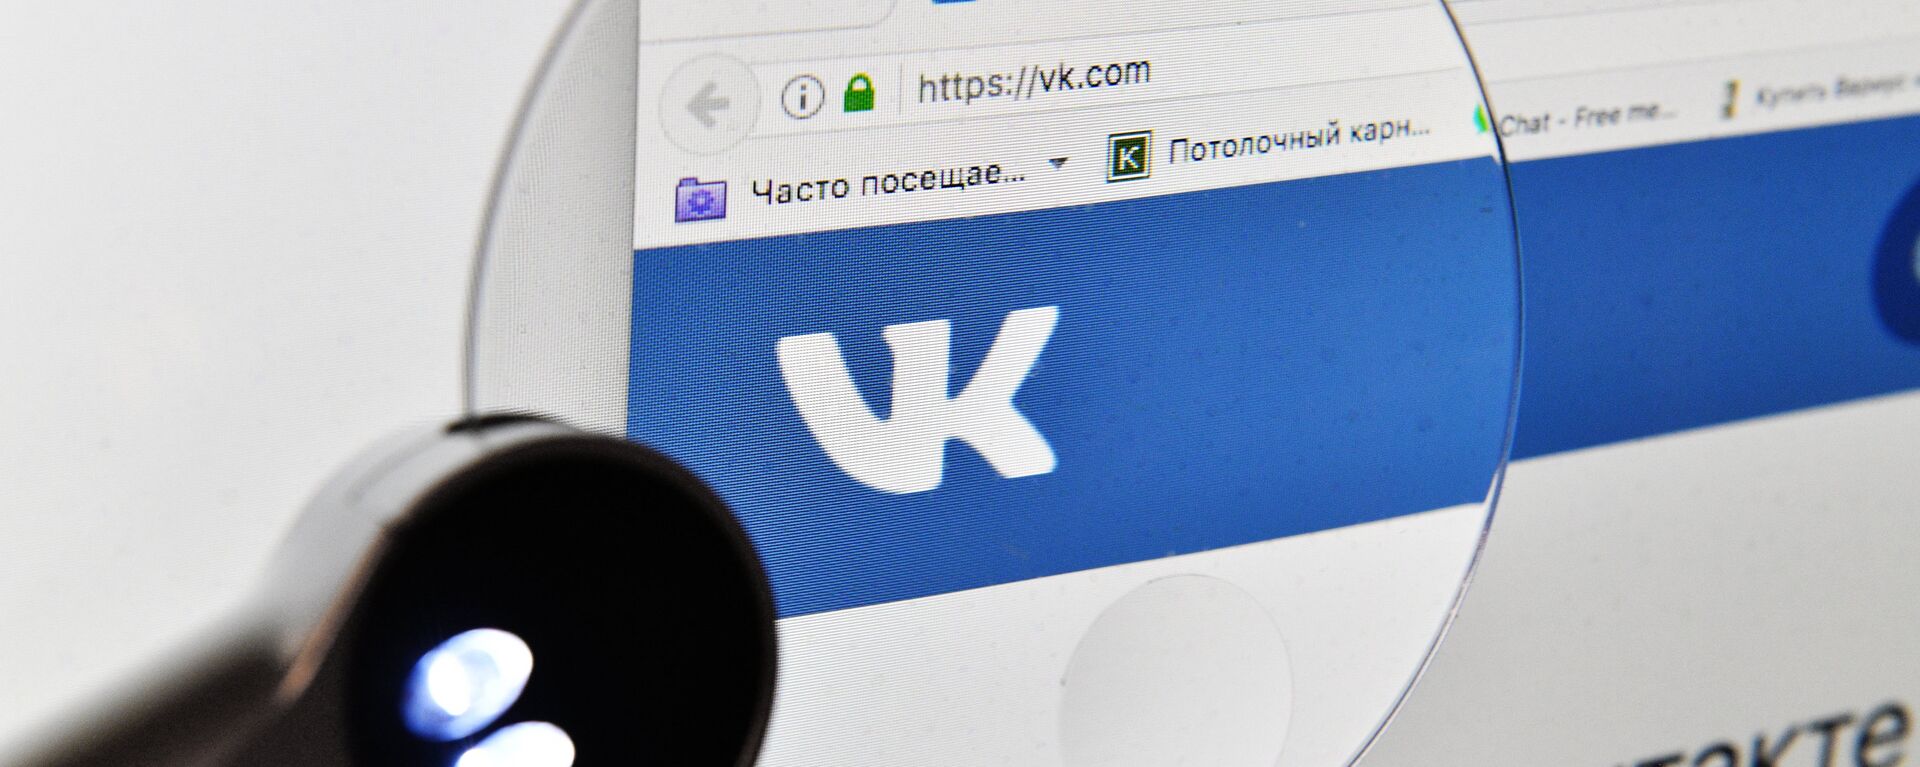 Социальная сеть Вконтакте. Архивное фото - Sputnik Кыргызстан, 1920, 13.03.2022